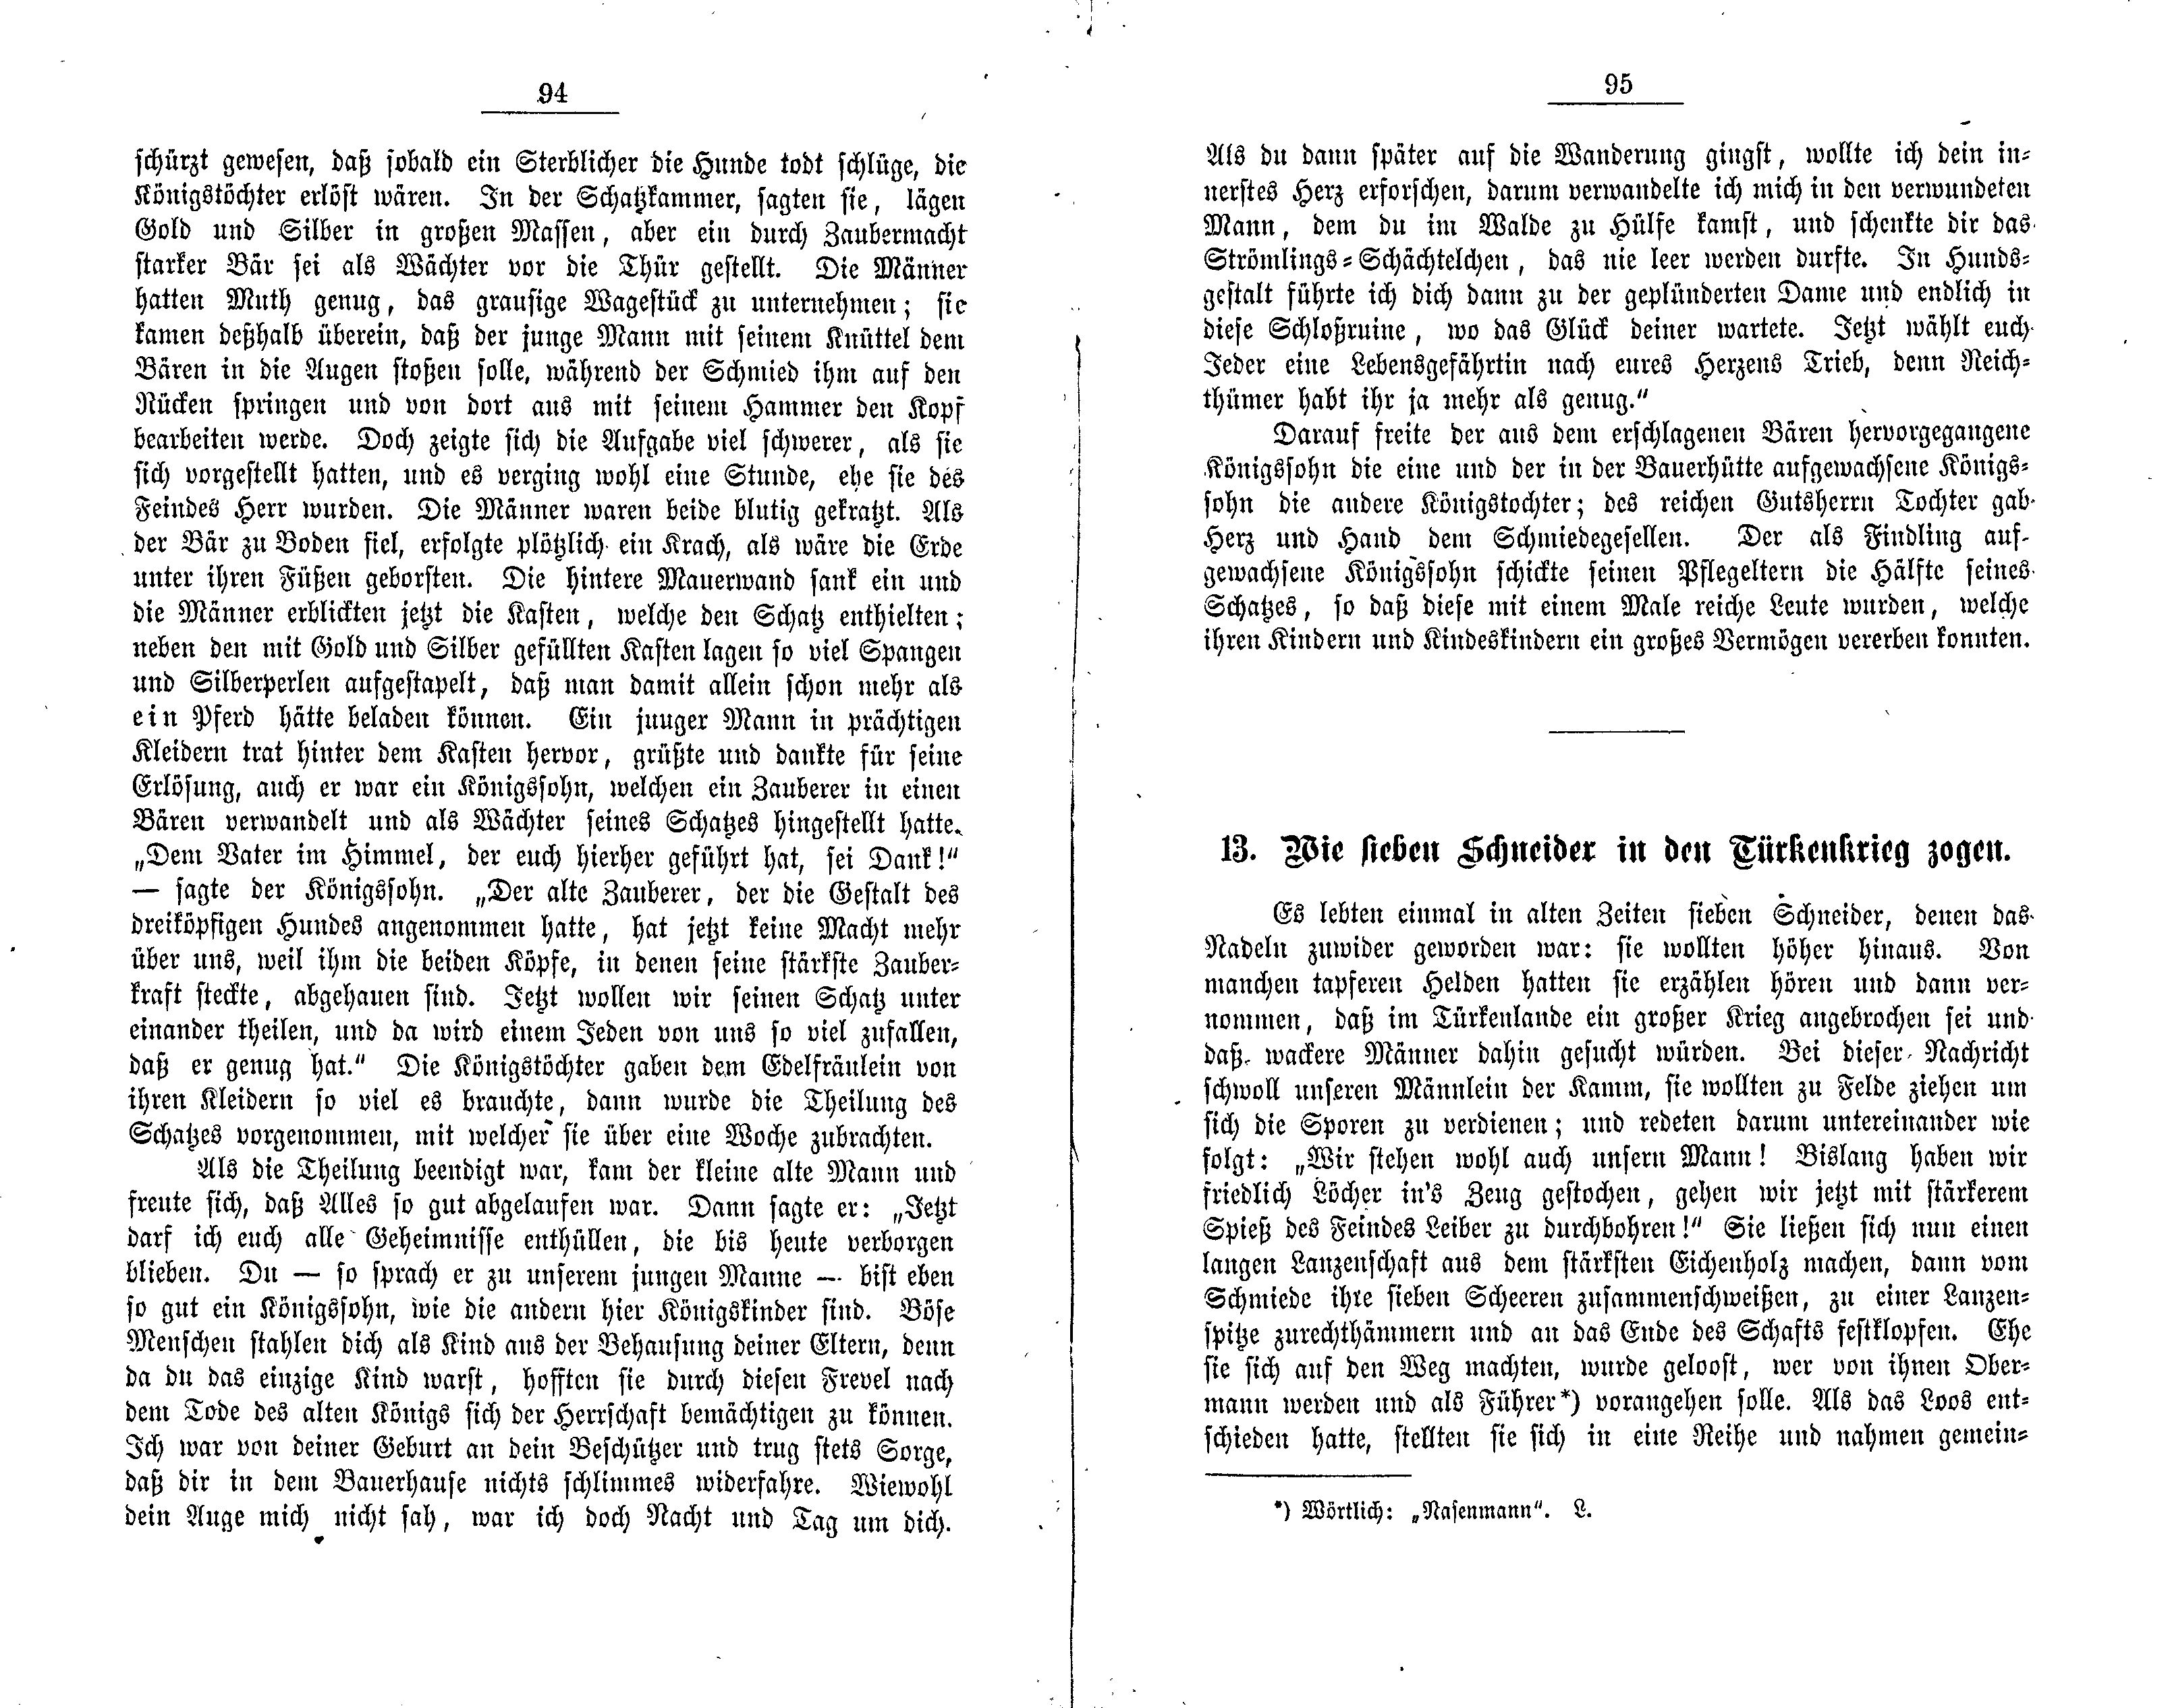 Wie sieben Schneider in den Türkenkrieg zogen (1881) | 1. (94-95) Haupttext